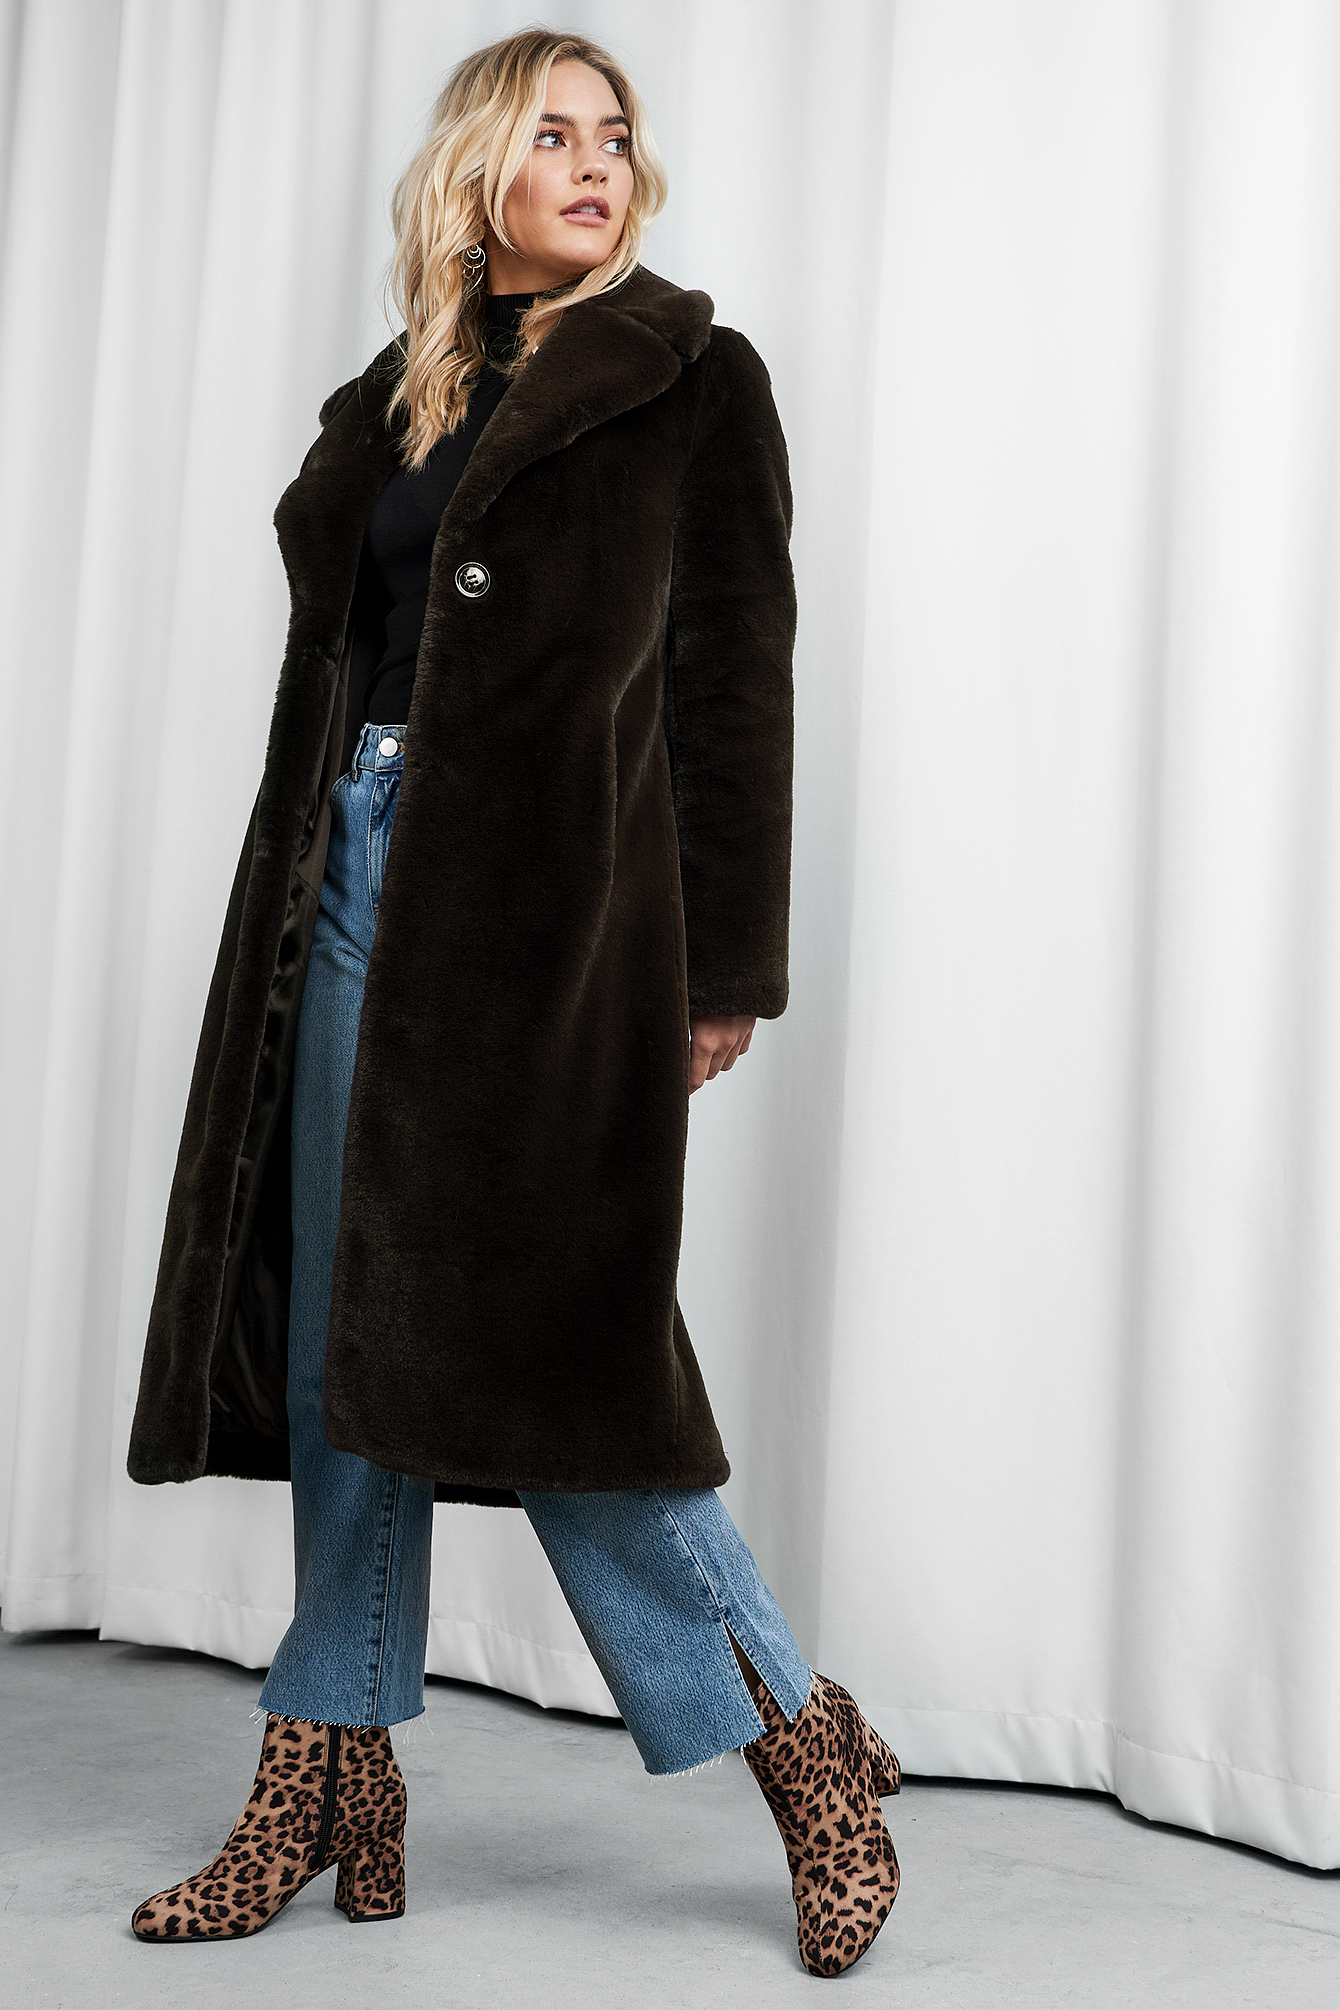 XLE the Label Caroline Faux Fur Coat - Brown